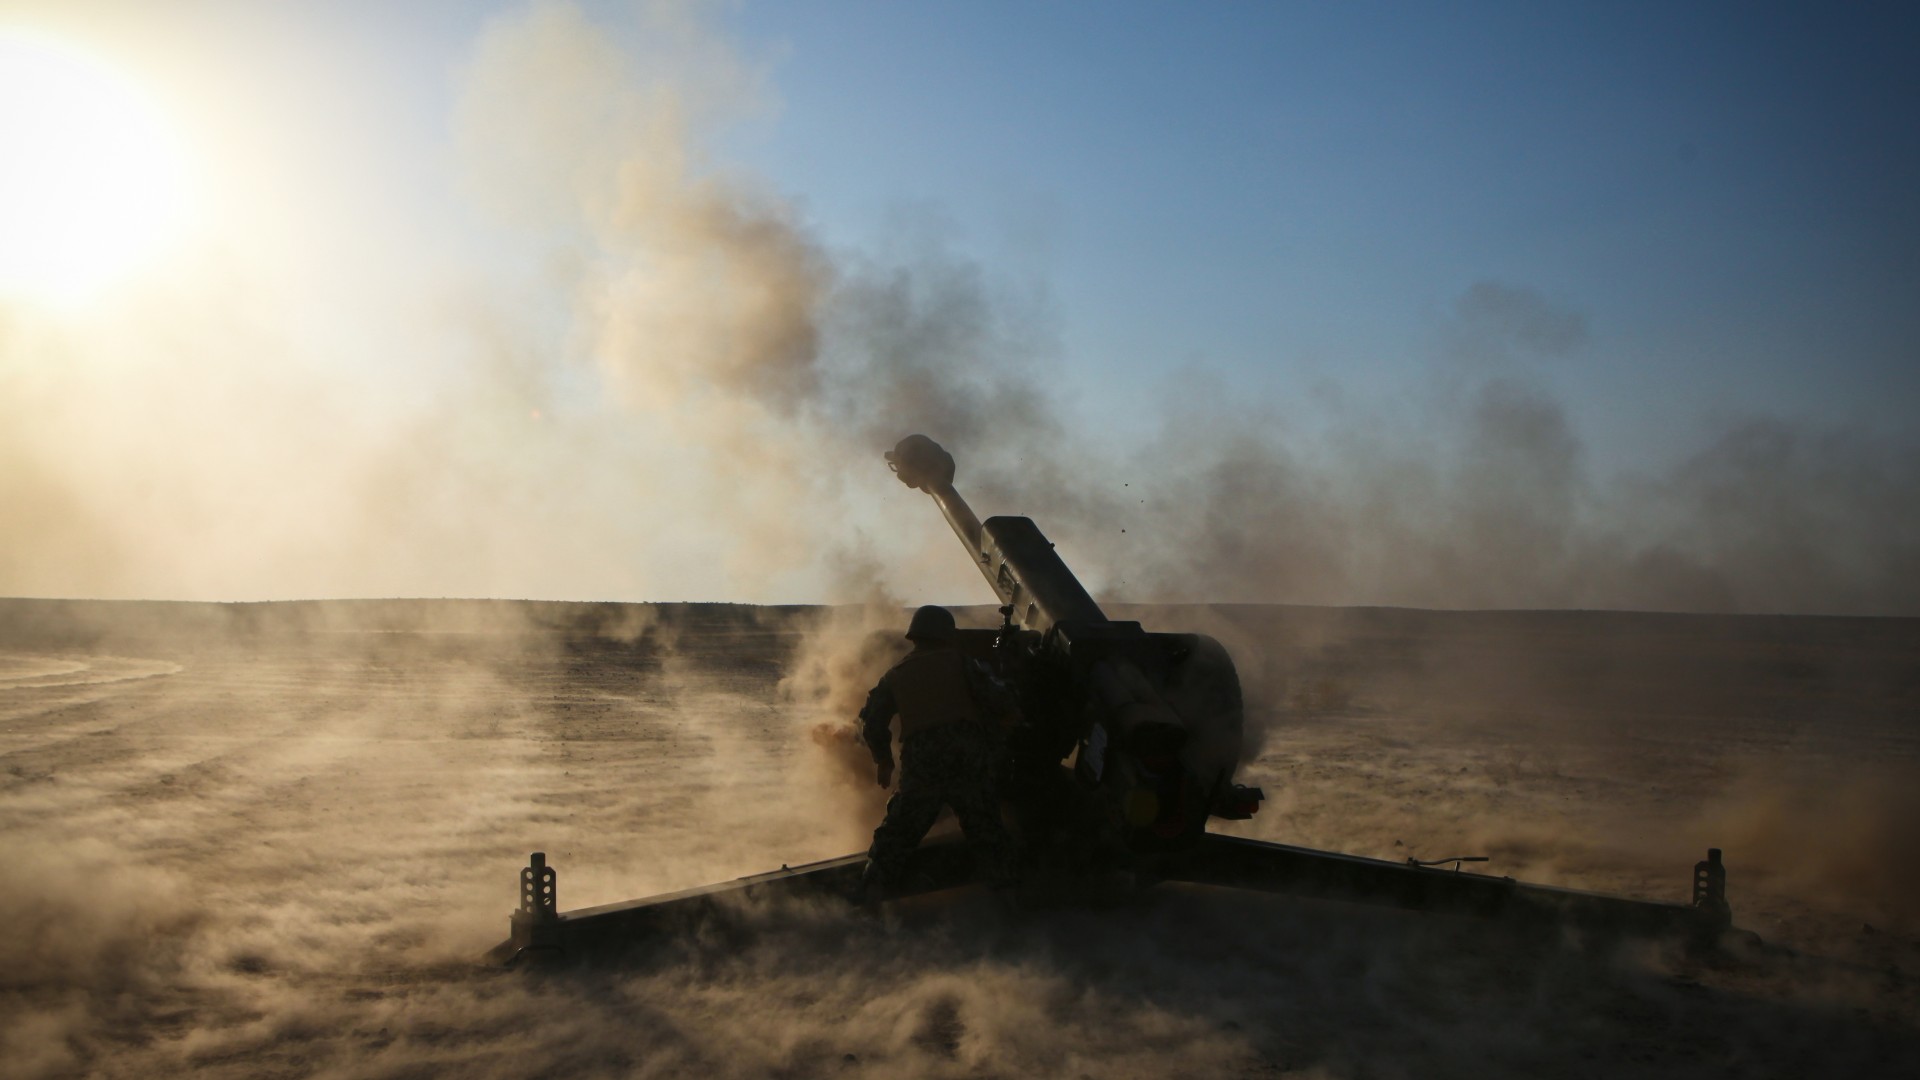 D-30, howitzer, 2A18, 122-mm, artillery, weapon, firing, desert, sand (horizontal)